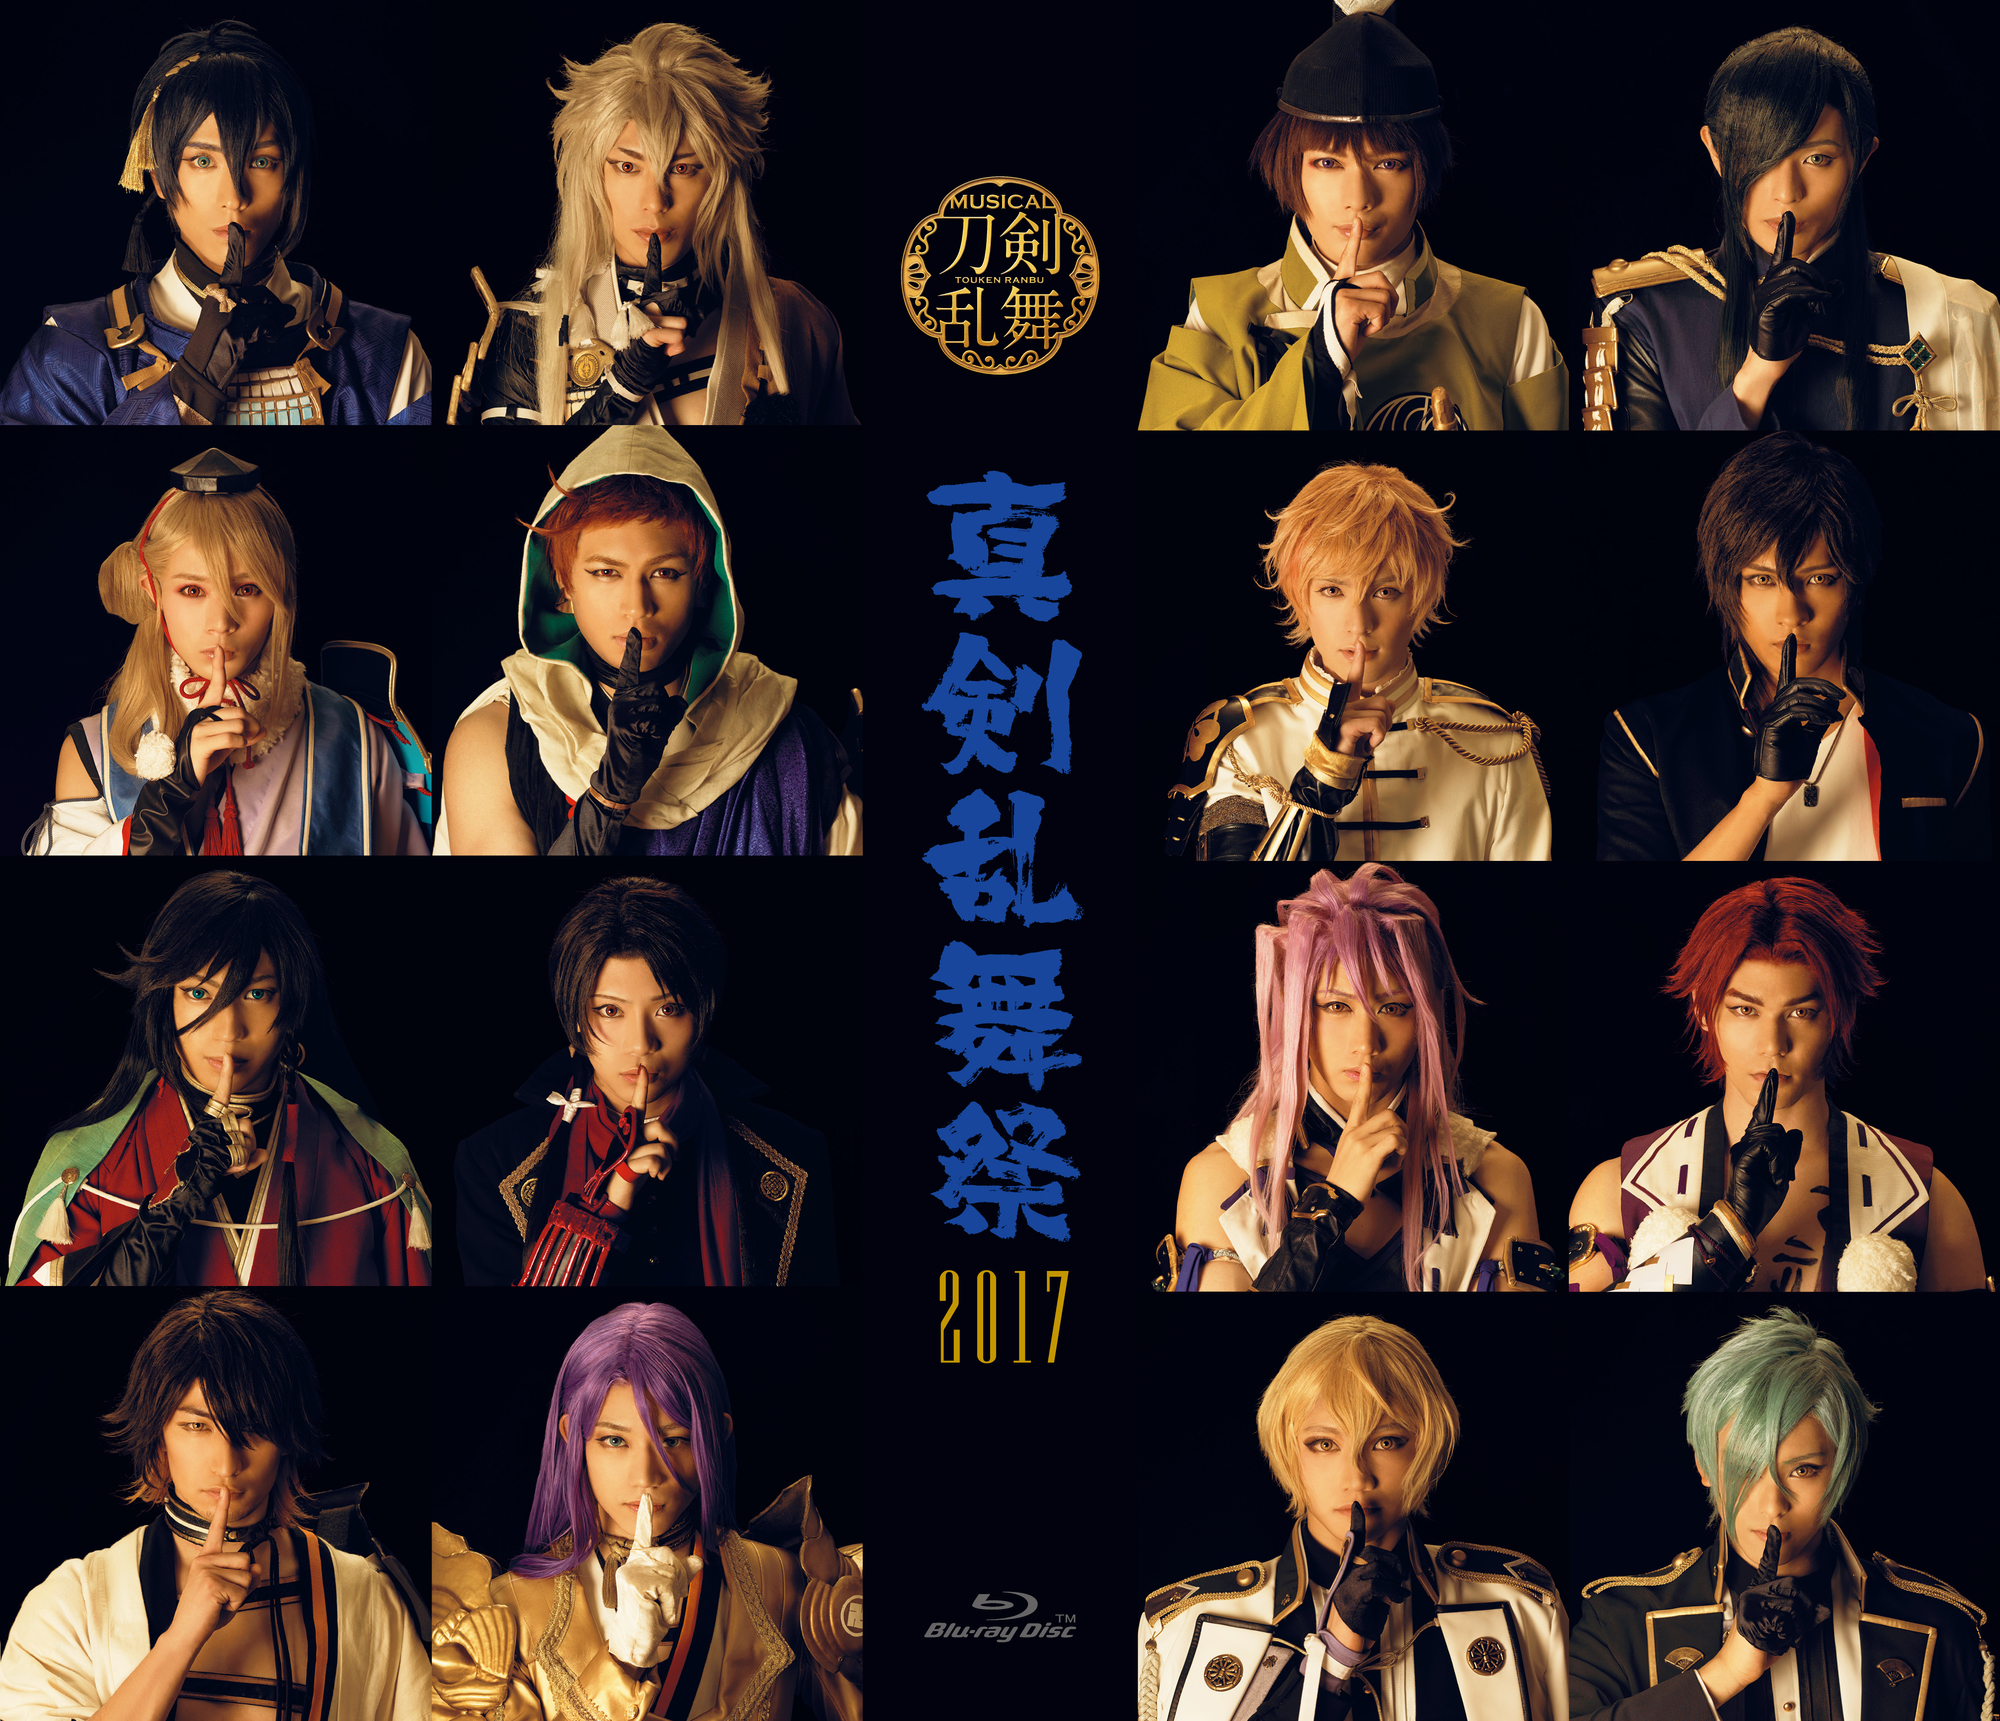 ミュージカル『刀剣乱舞』真剣乱舞祭2017 | ミュージカル『刀剣乱舞』公式サイト